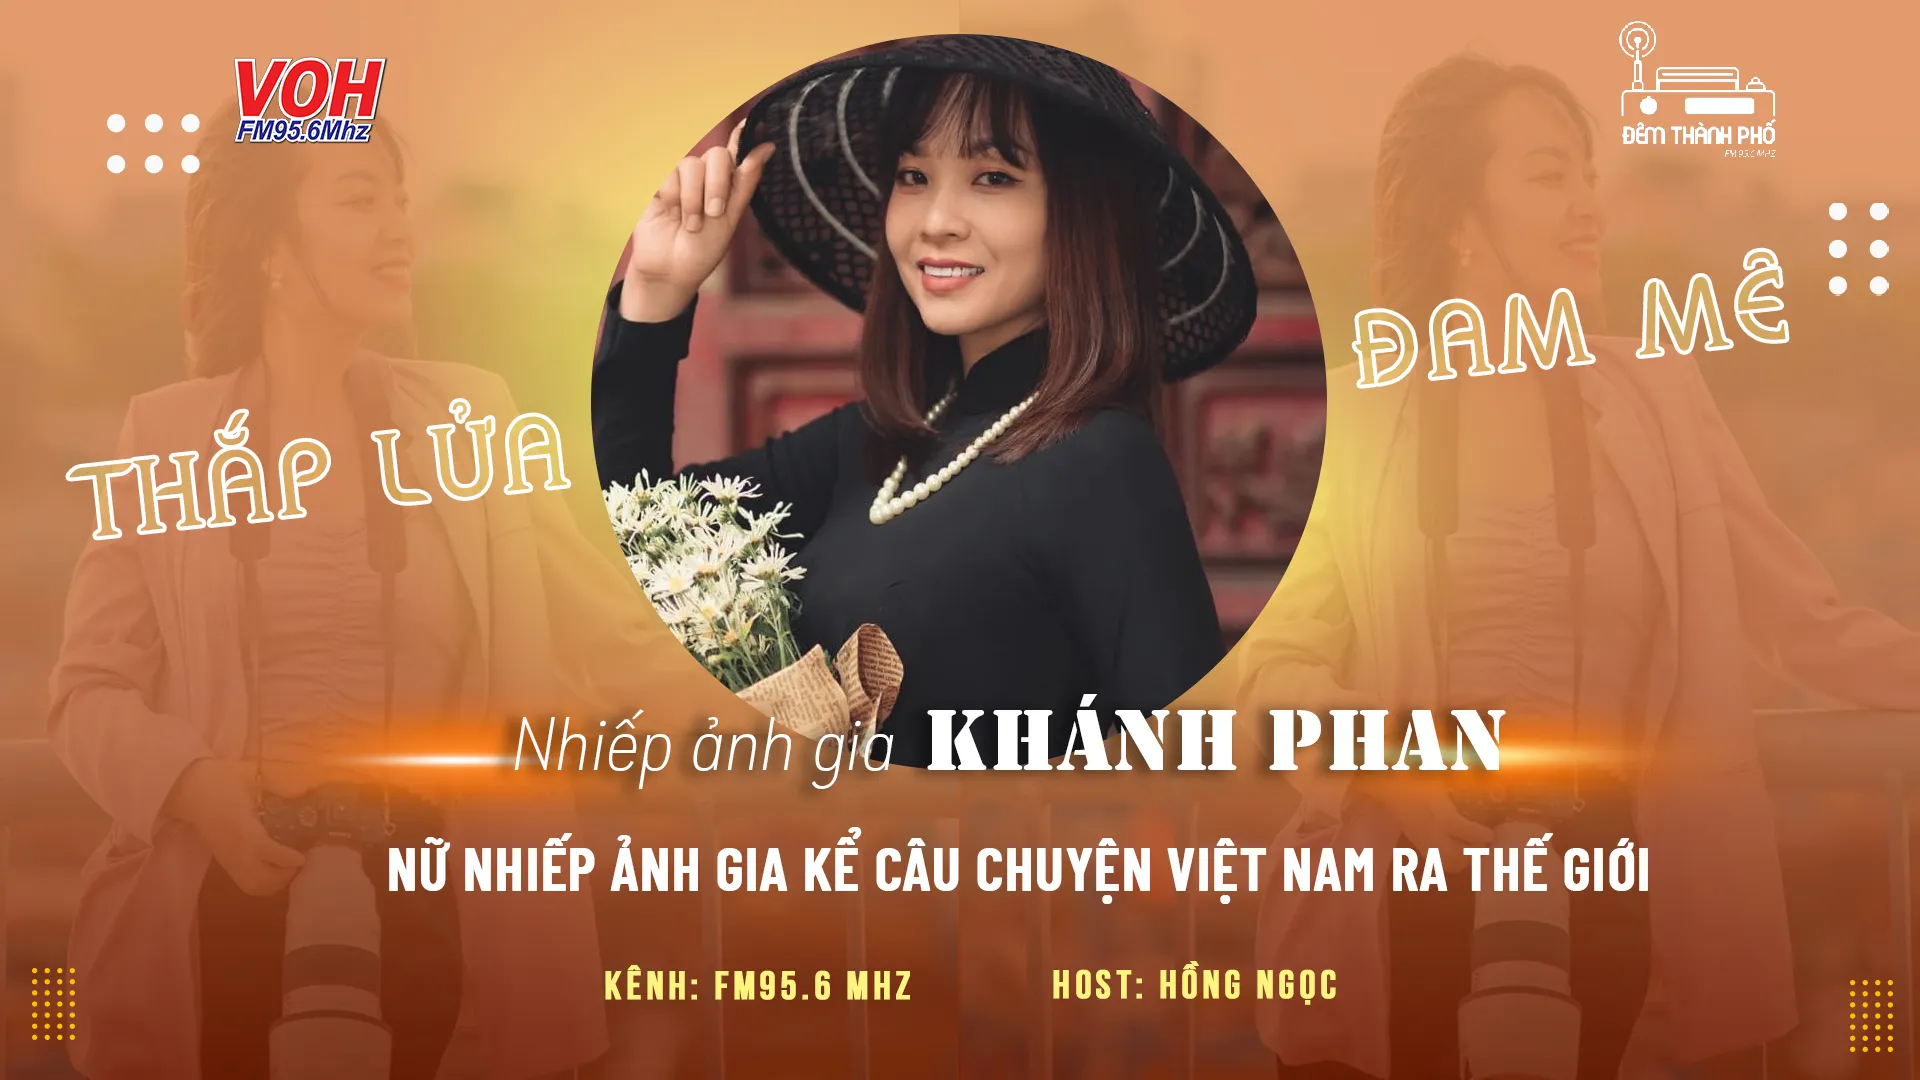 Khánh Phan: Nữ nhiếp ảnh gia đưa cảnh đẹp Việt Nam vươn tầm quốc tế